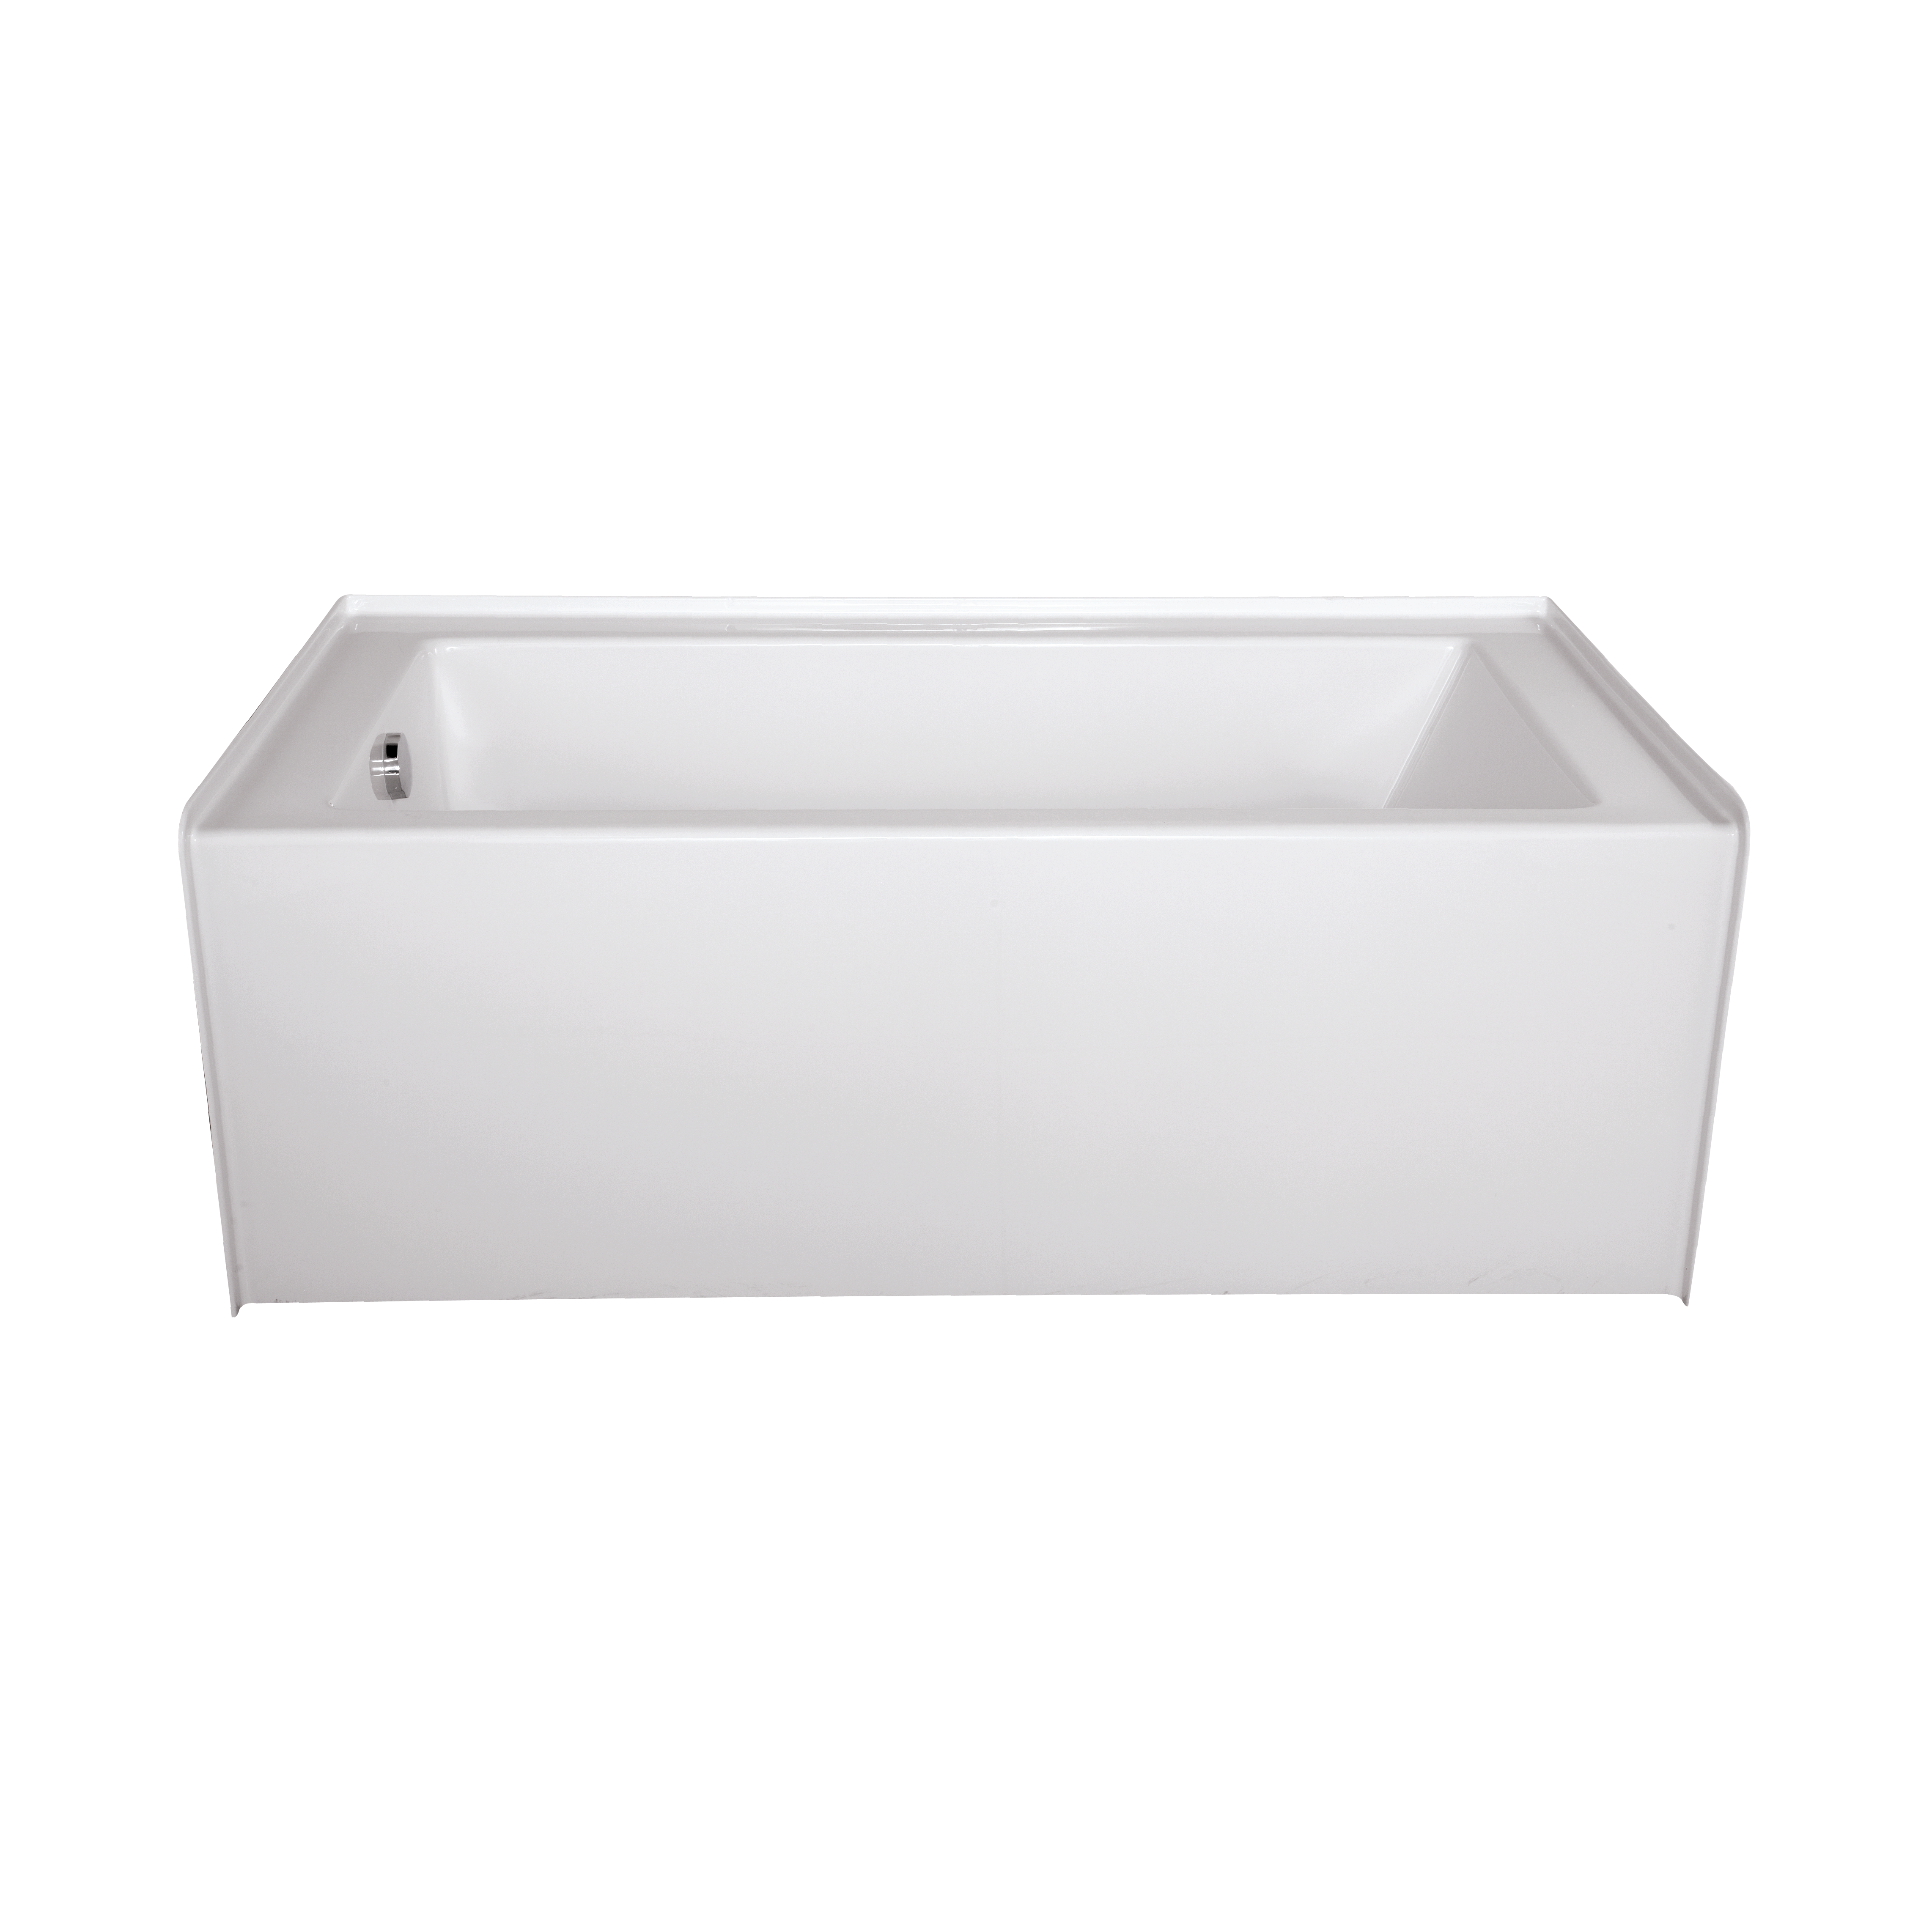 Elte, Cyan 6030 Soaker Bath - White